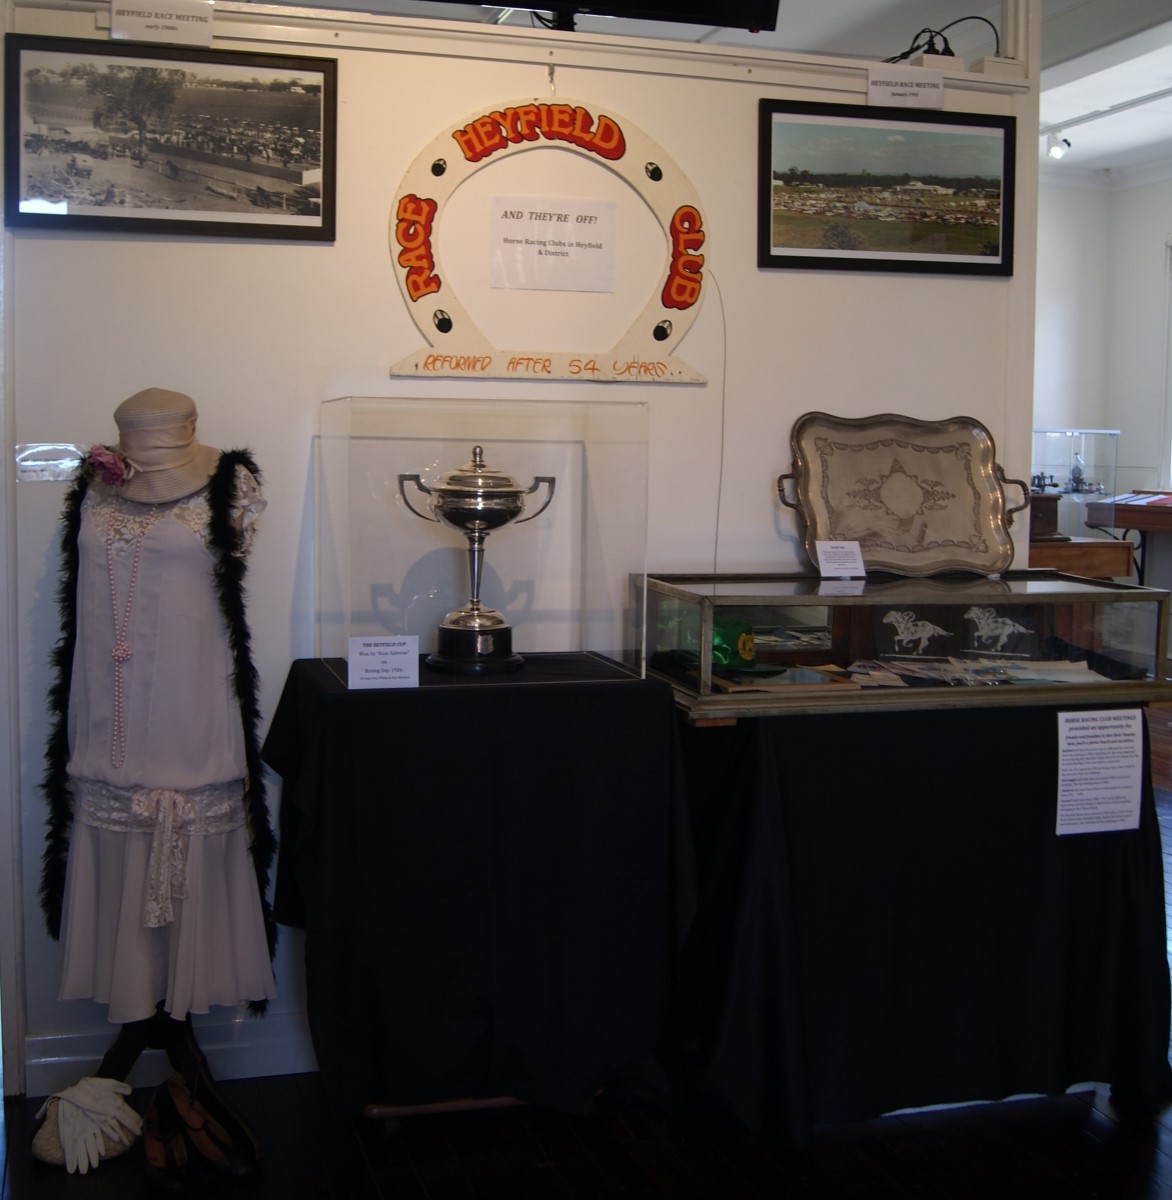 Heyfield Racecourse memorabilia including trophies, ladies racing attire and racecourse photos